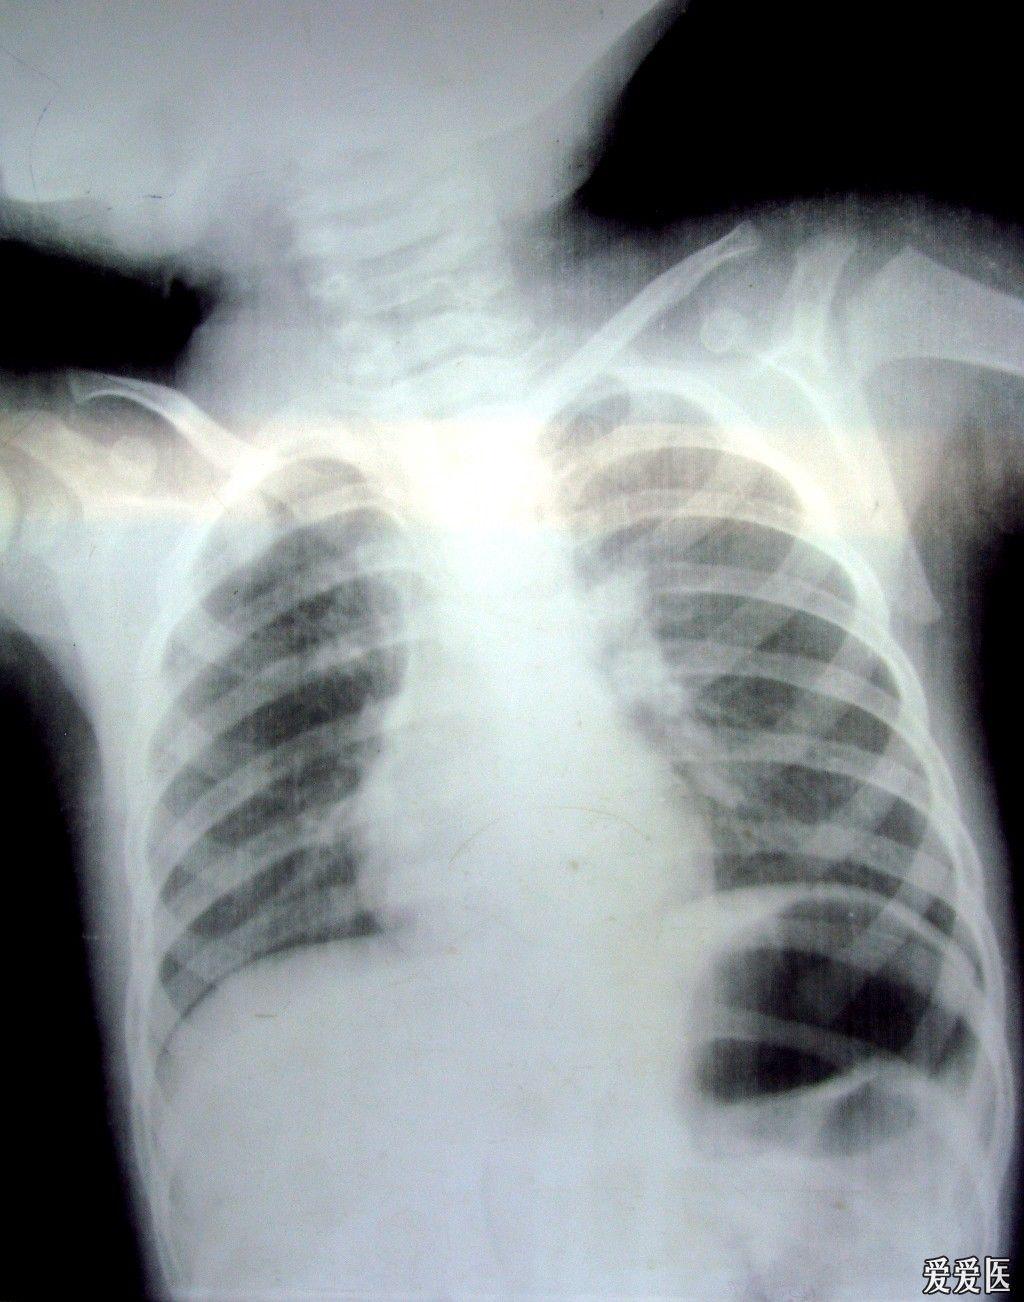 儿童胸片双肺纹理增粗图片